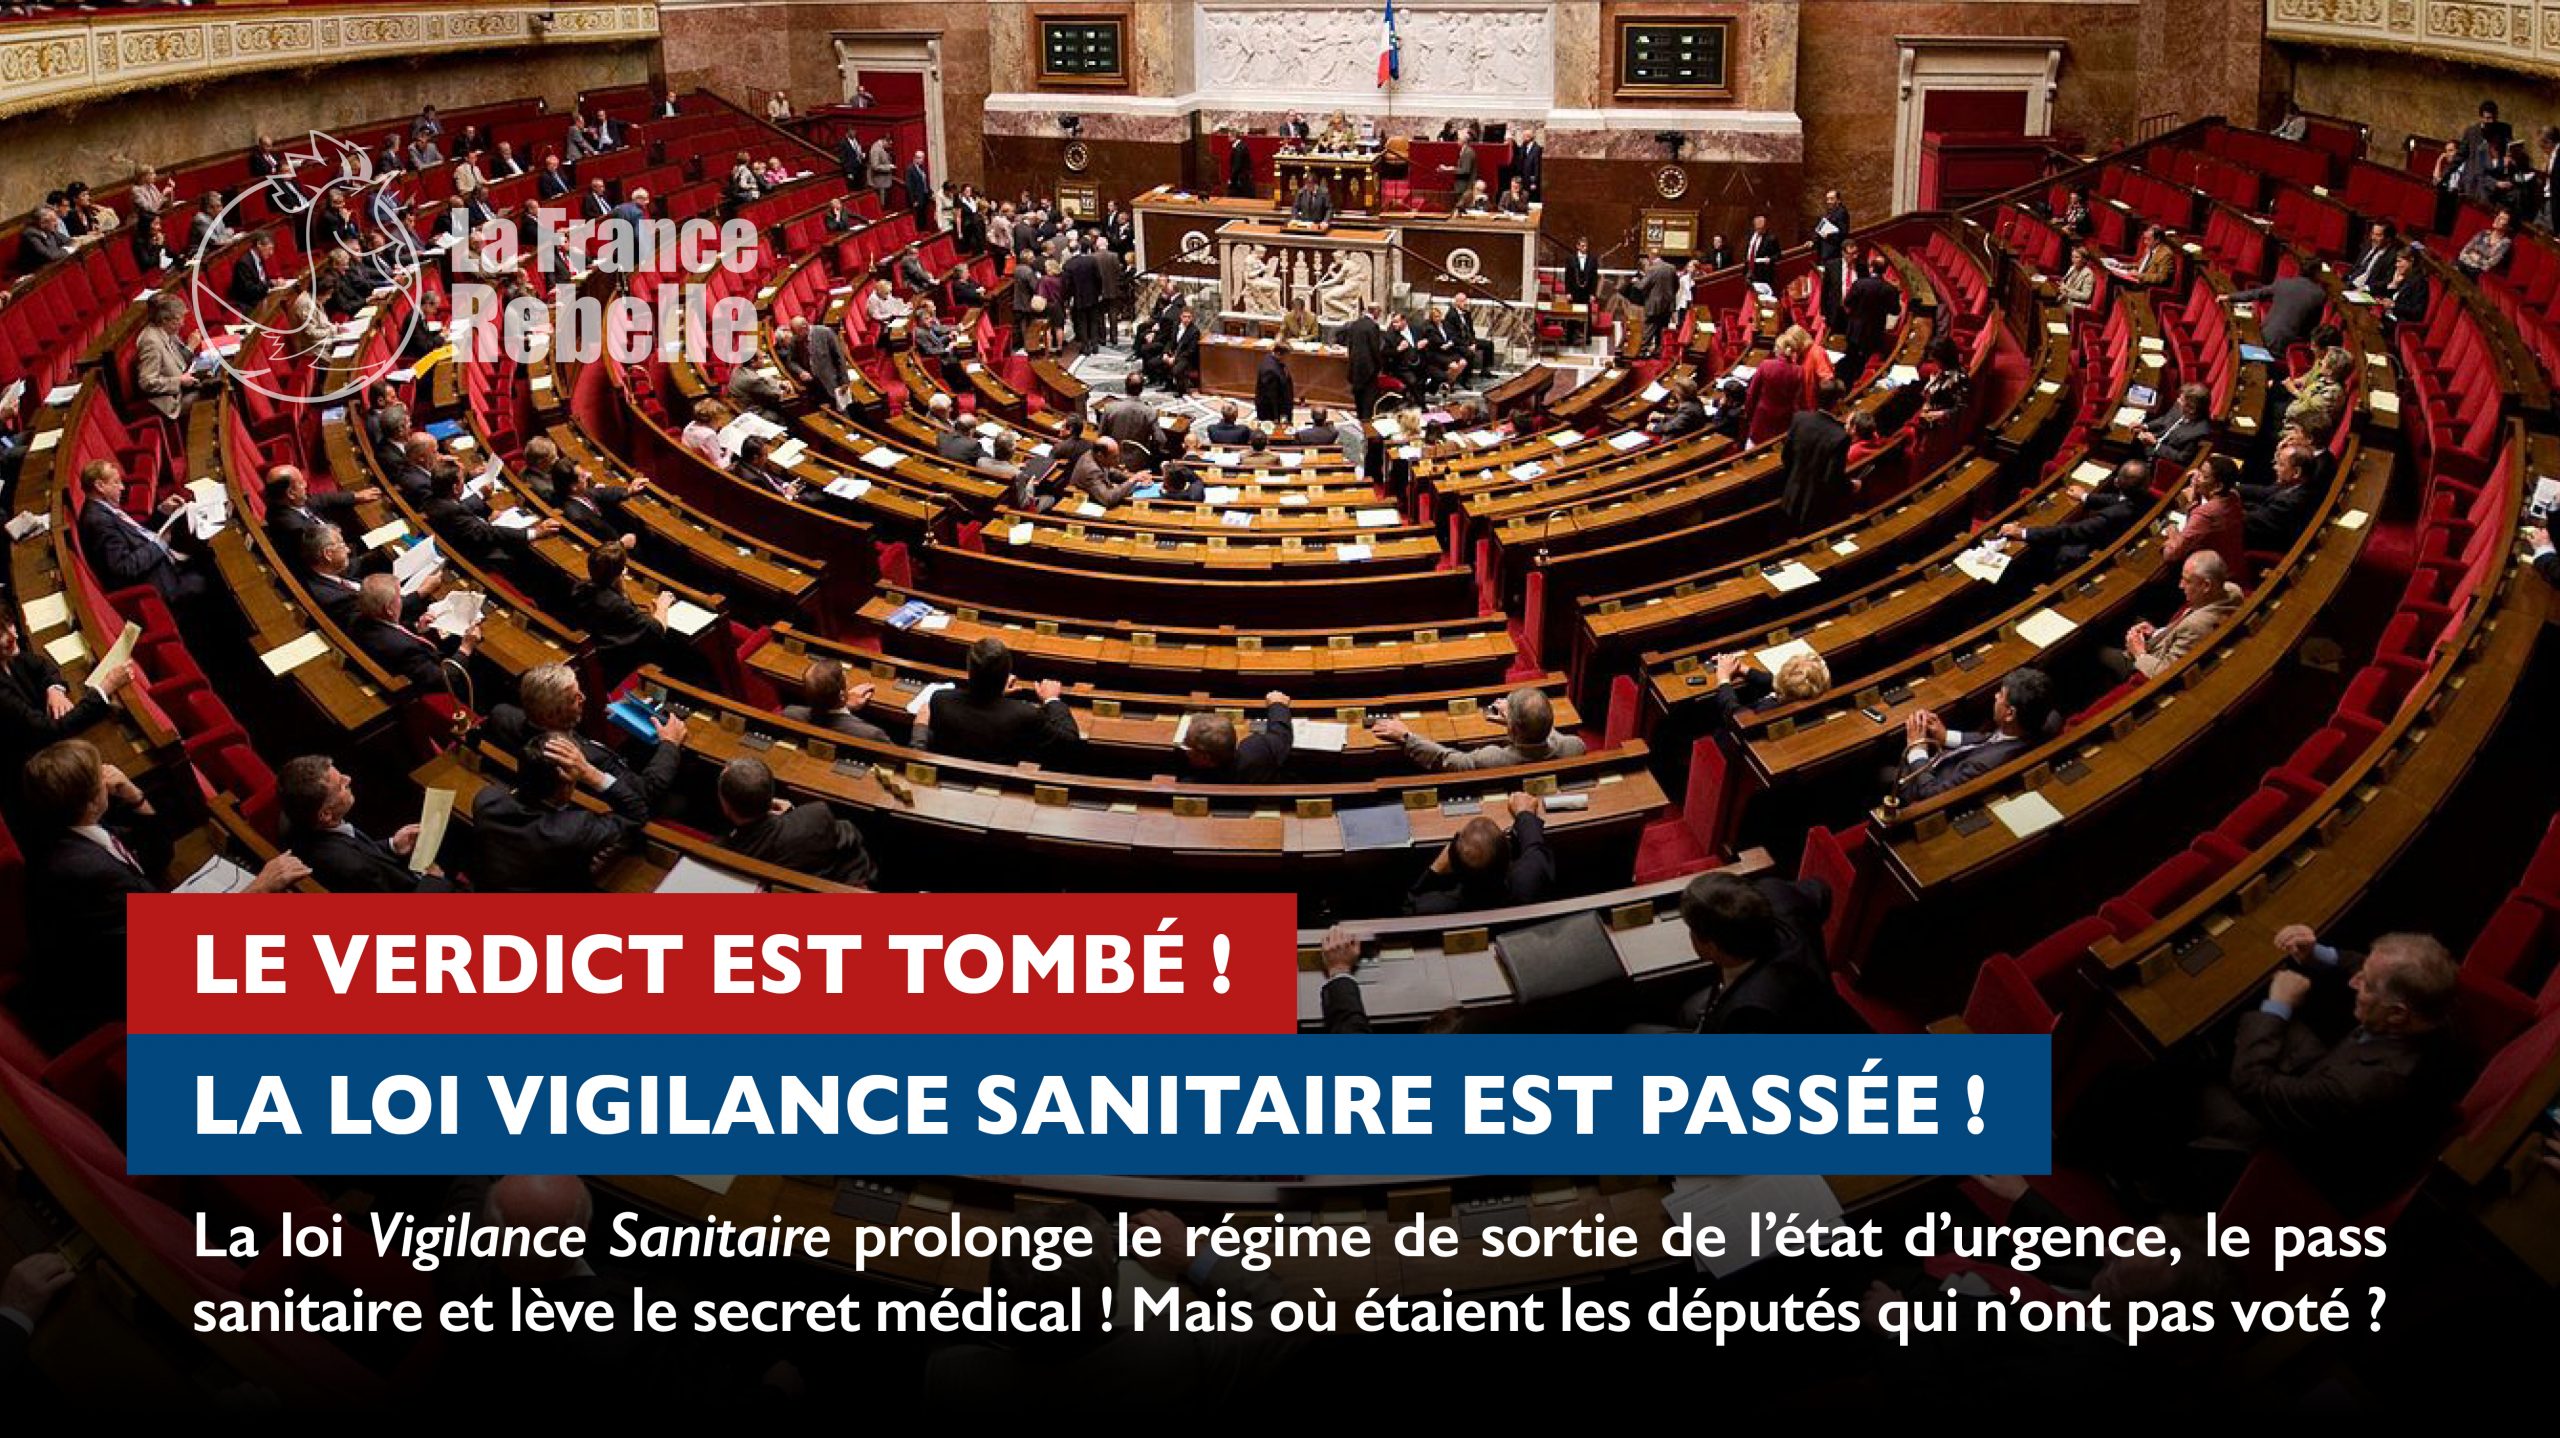 Read more about the article La loi Vigilance Sanitaire est passée !